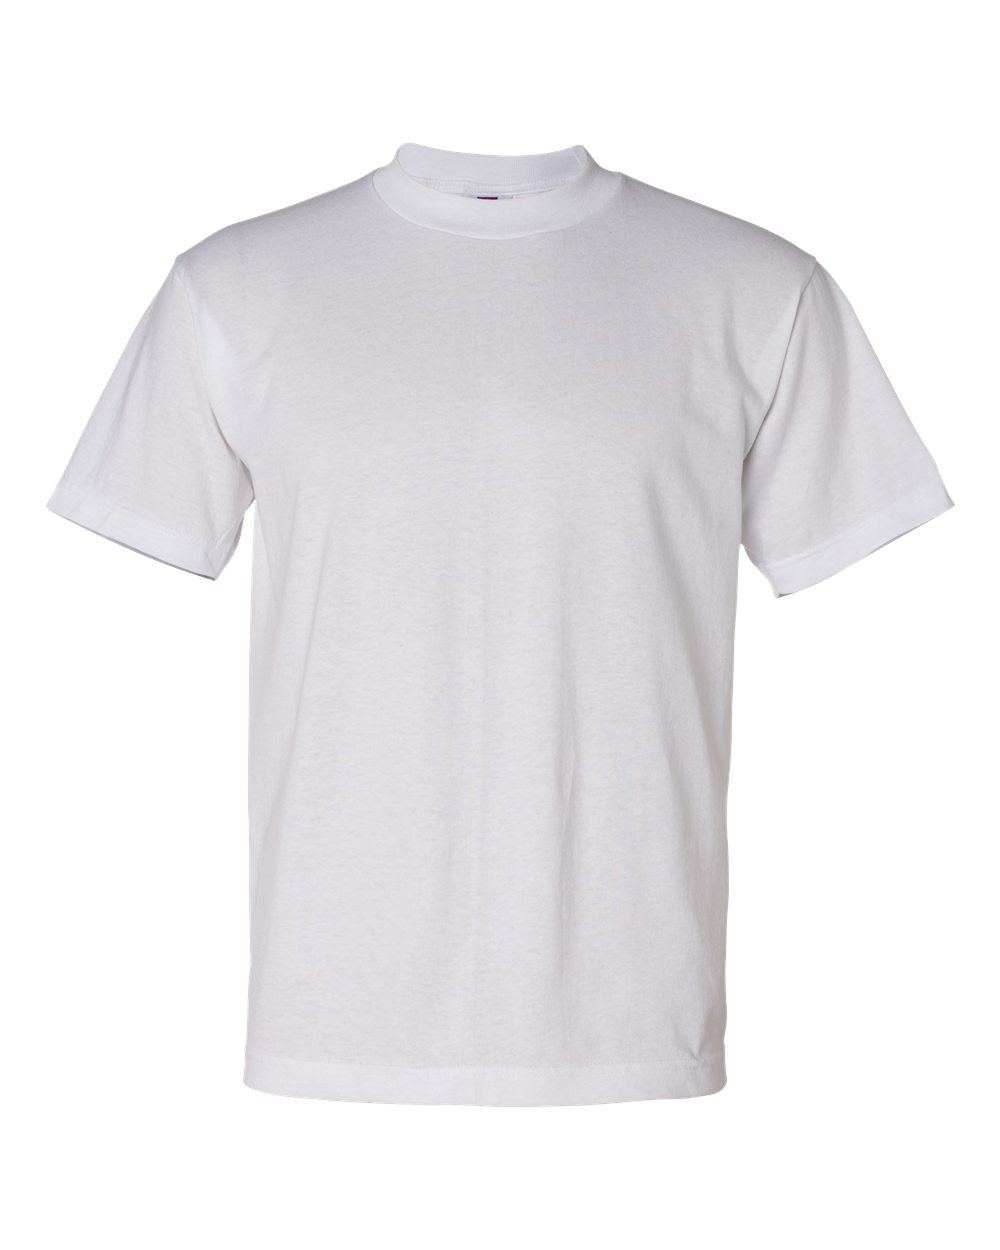 USA-Made 50/50 Short Sleeve T-Shirt-